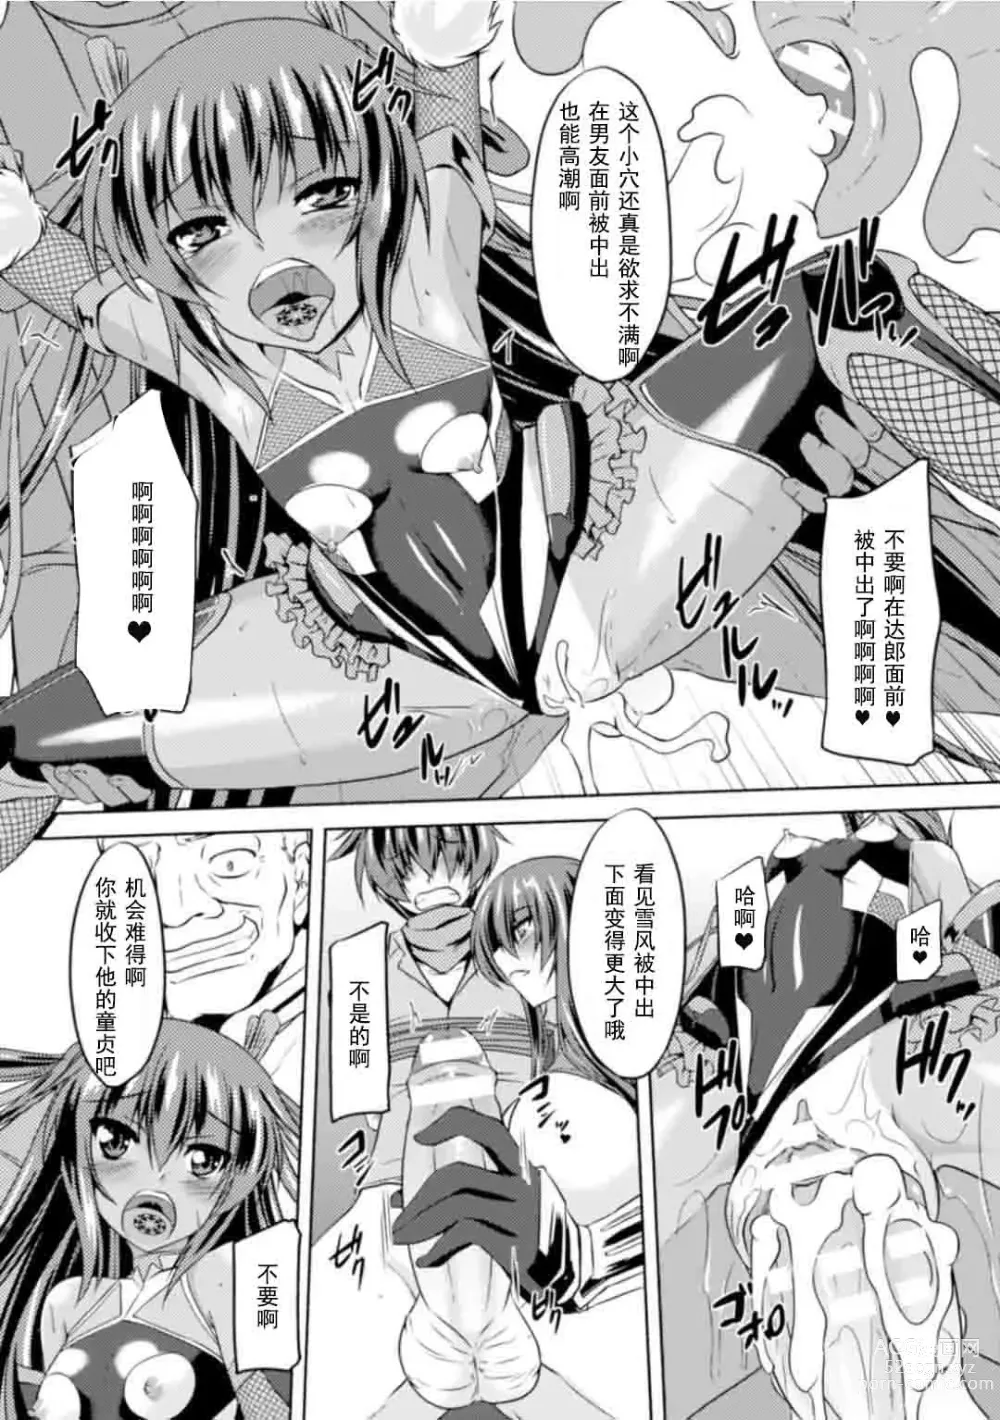 Page 155 of manga Taimanin Yukikaze ~Taimanin Wa Ingoku Ni Shizumu~